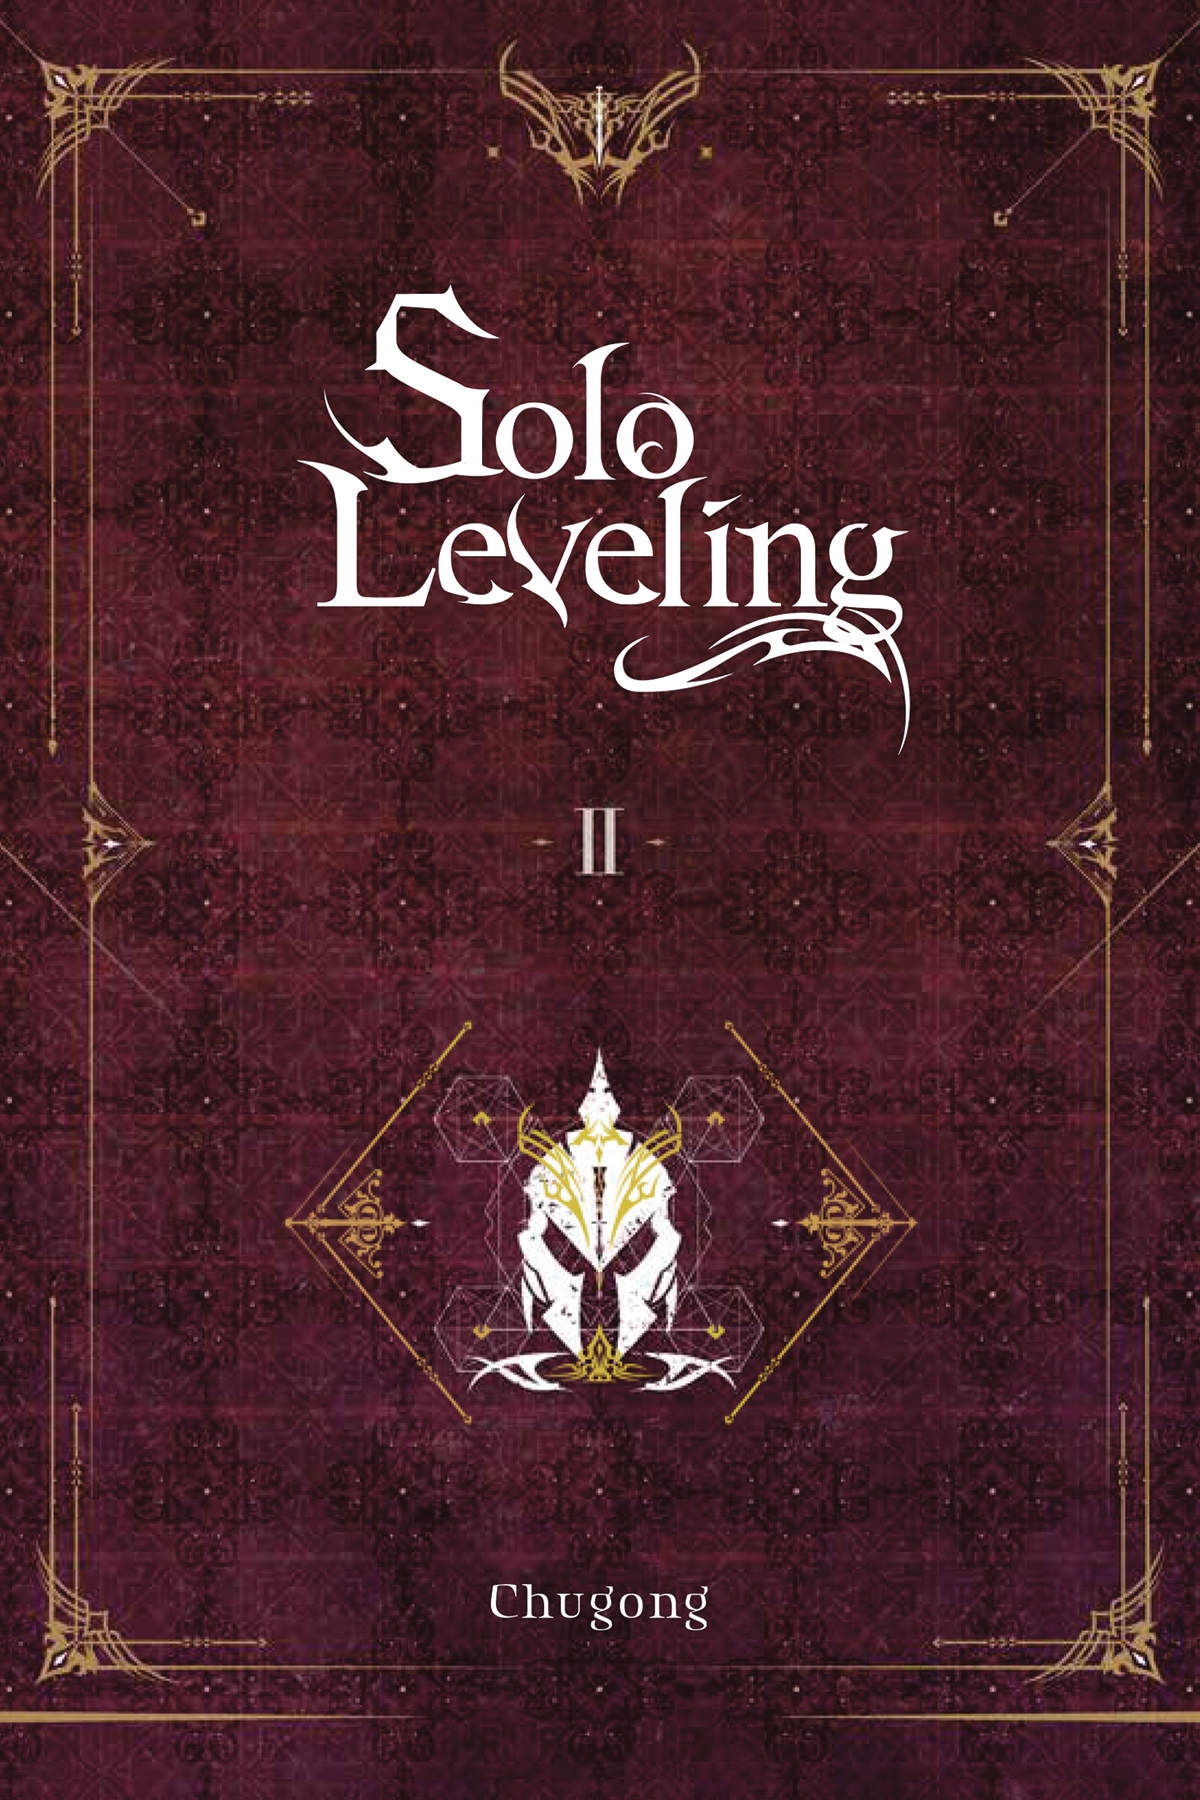 Solo Leveling Light Novel Volume 2